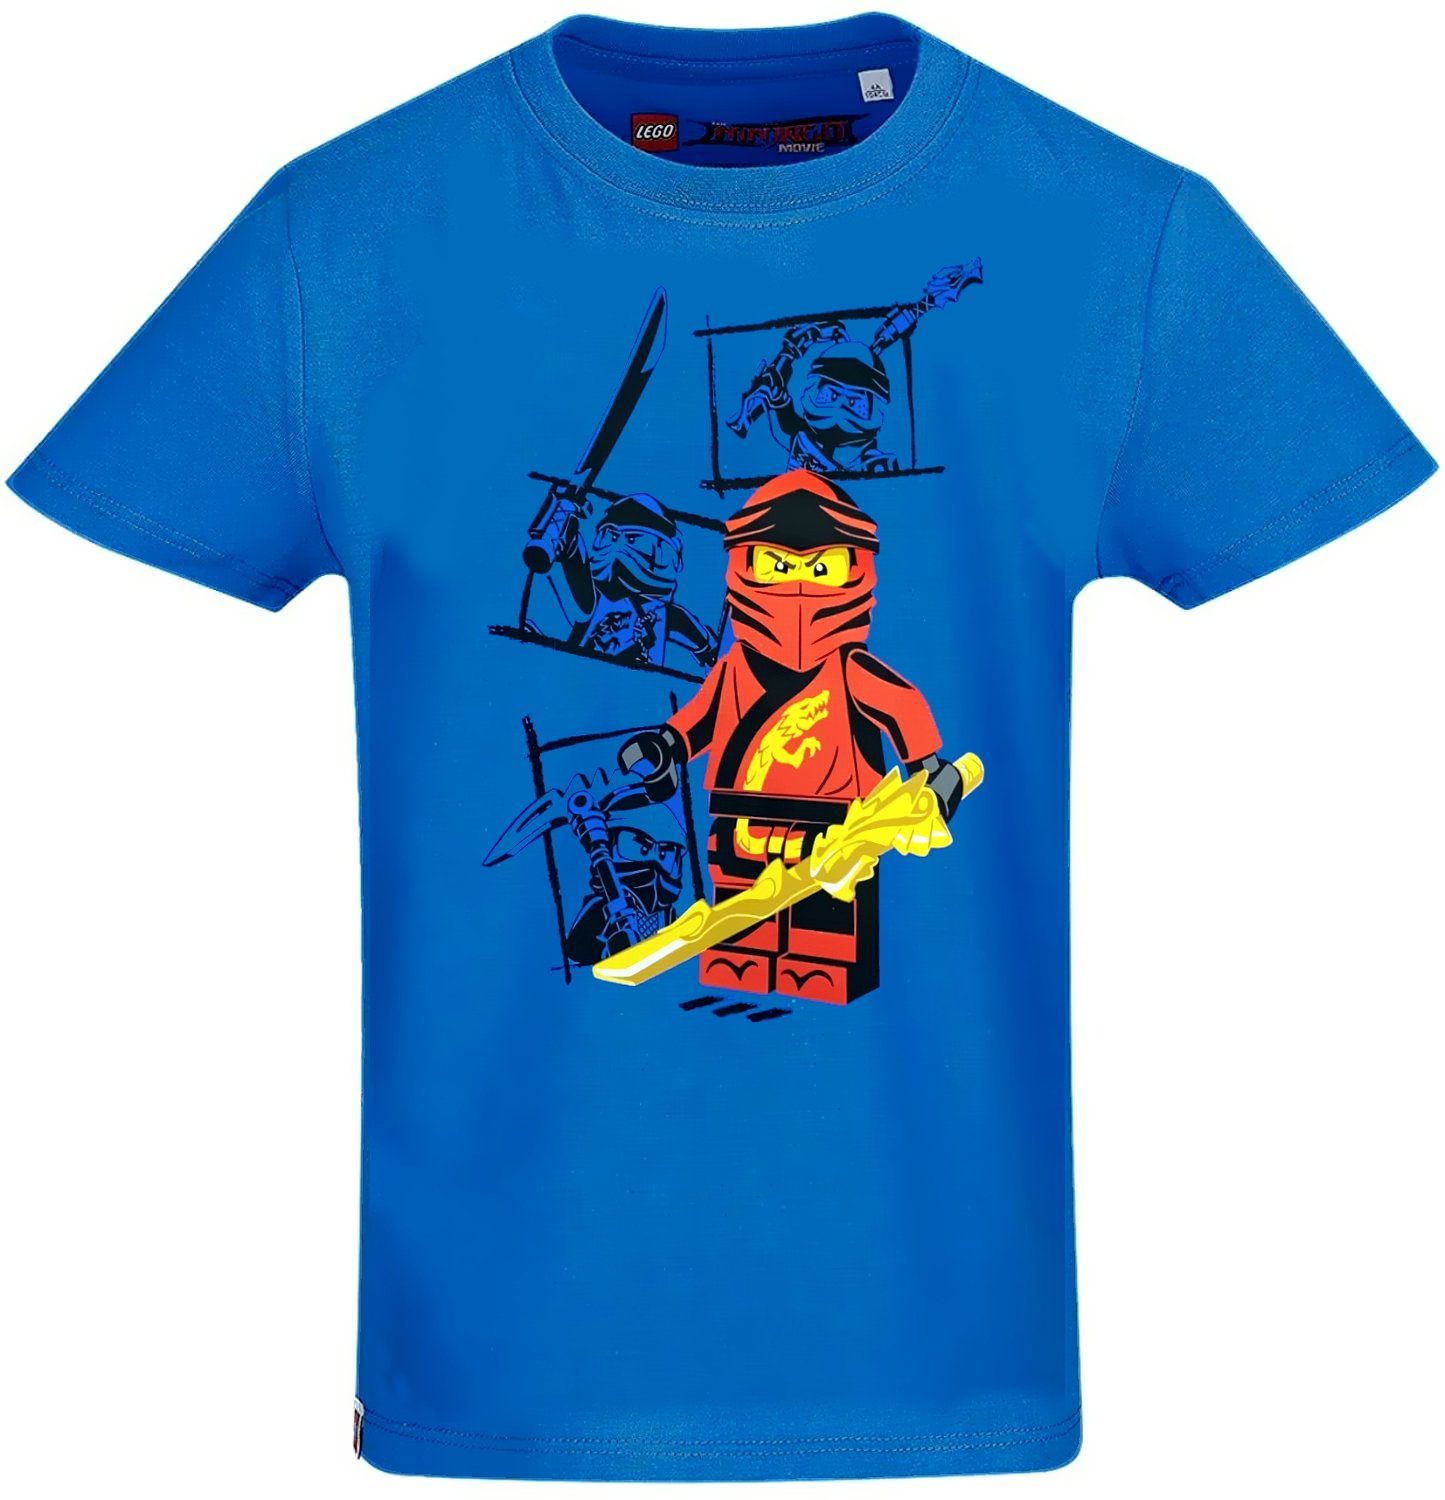 Jungen Bekleidung Shirts T-Shirts Lego Wear Jungen T-Shirt Gr DE 98 